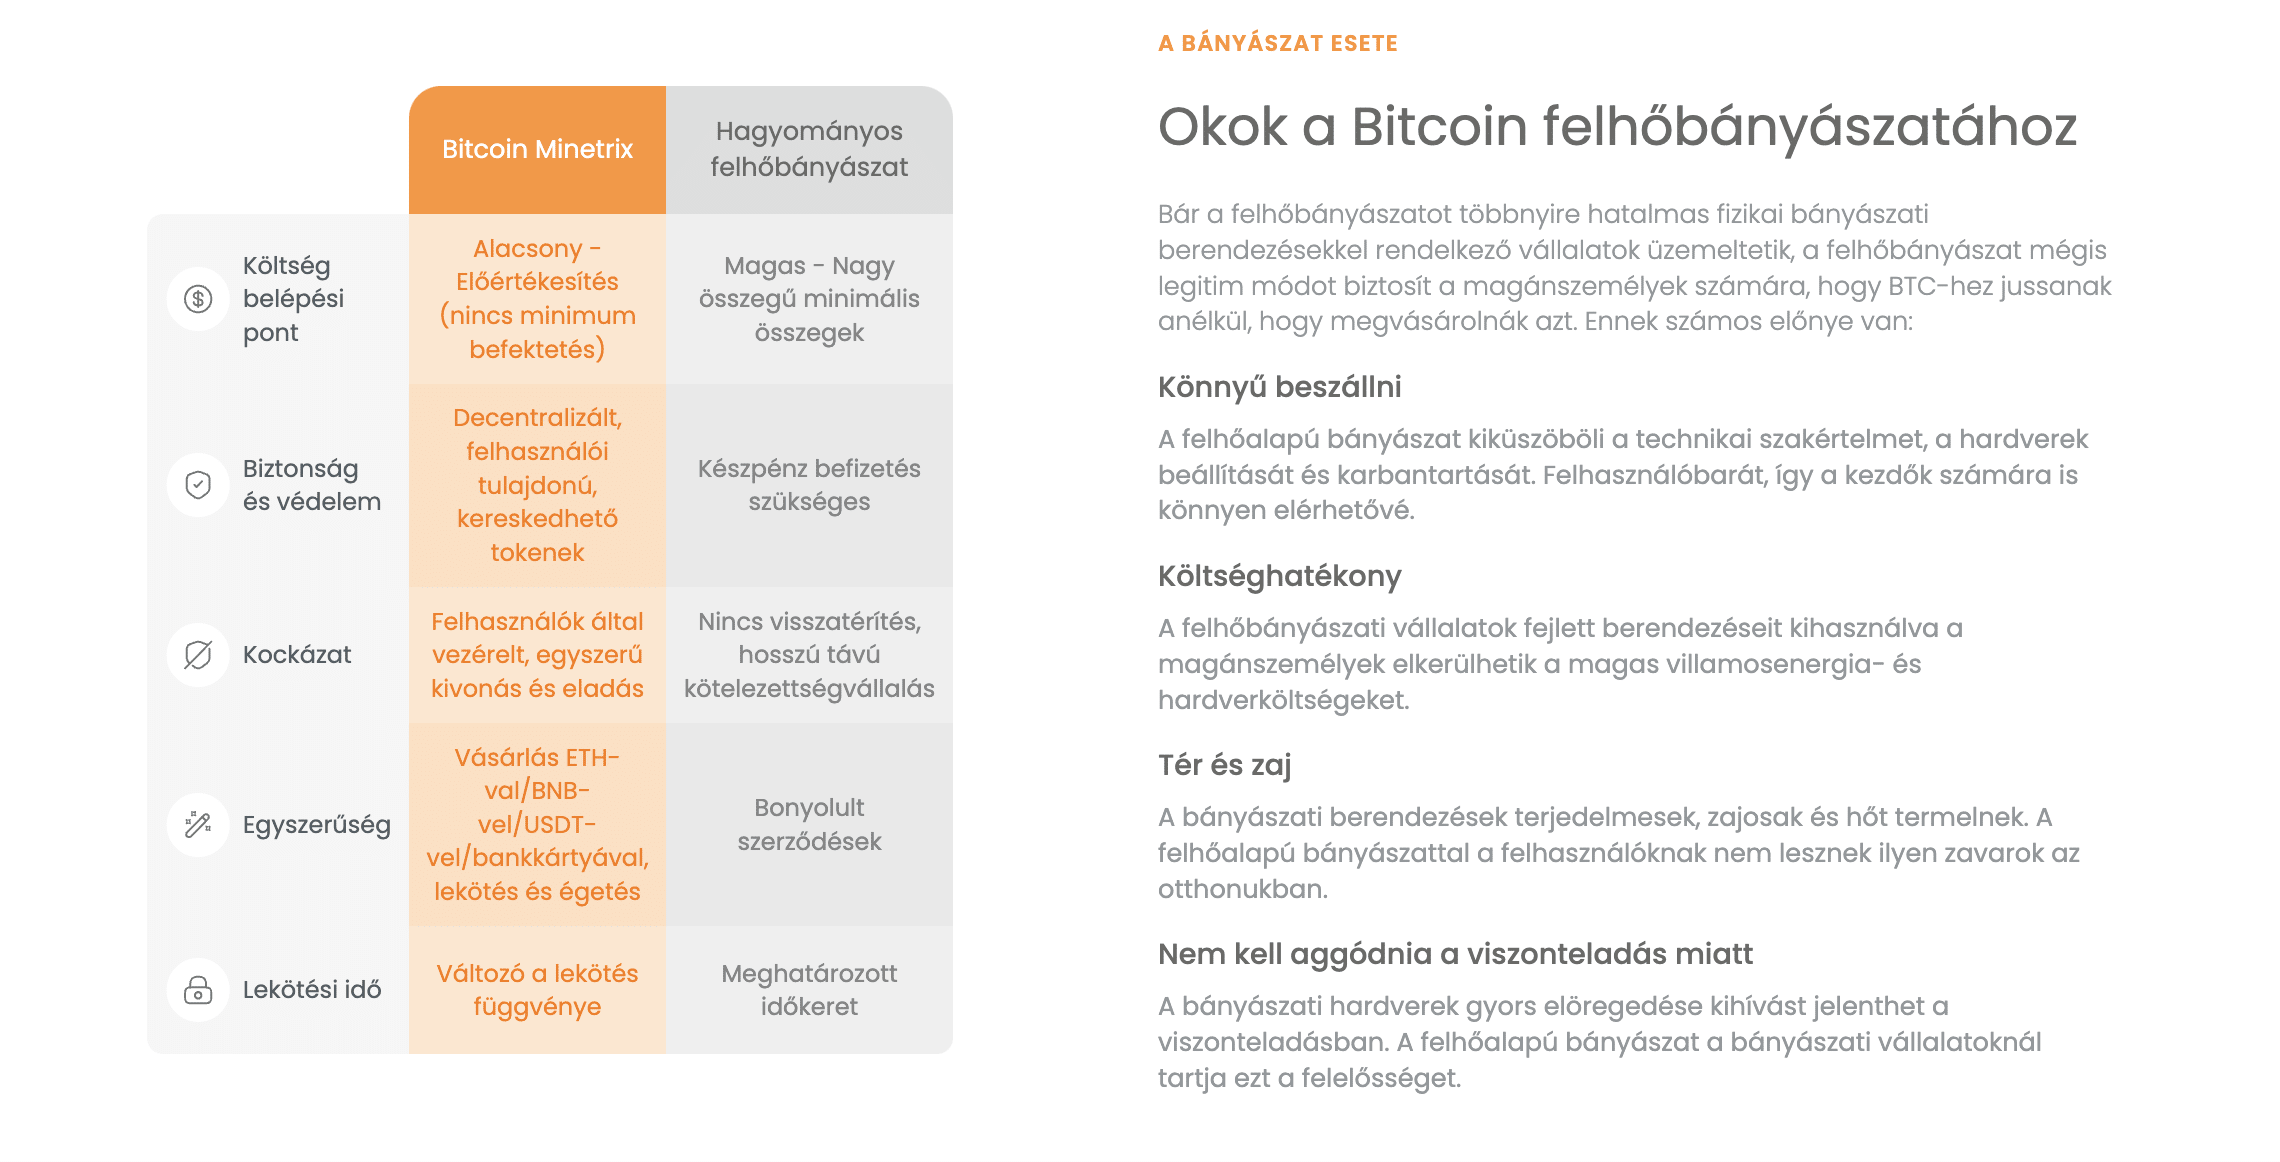 bitcoin minetrix felhobanyaszat infobox